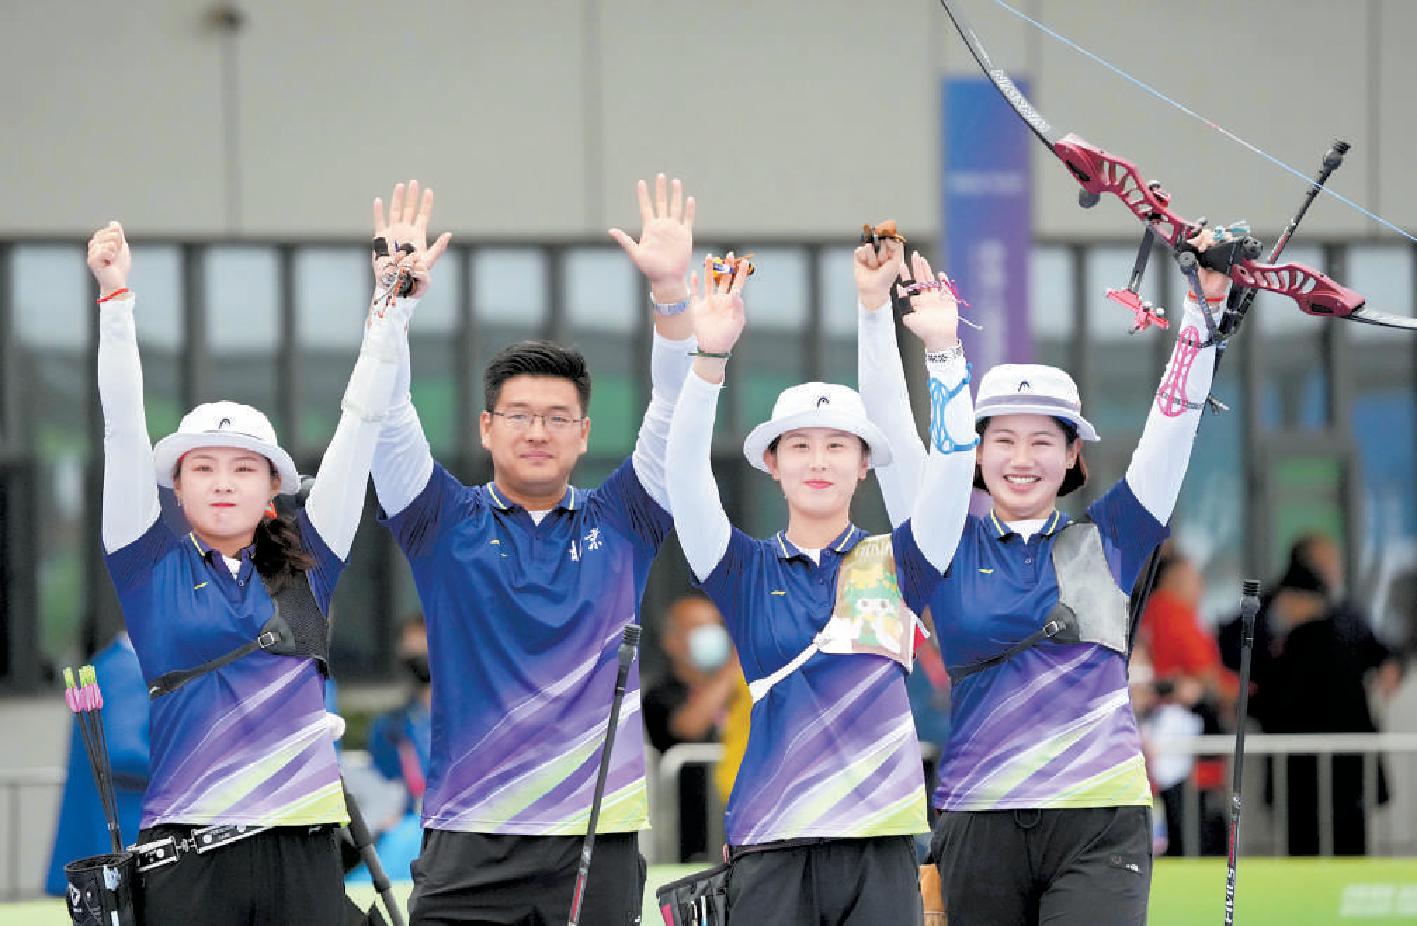 24年后 北京队再夺射箭反曲弓女子团体项目金牌